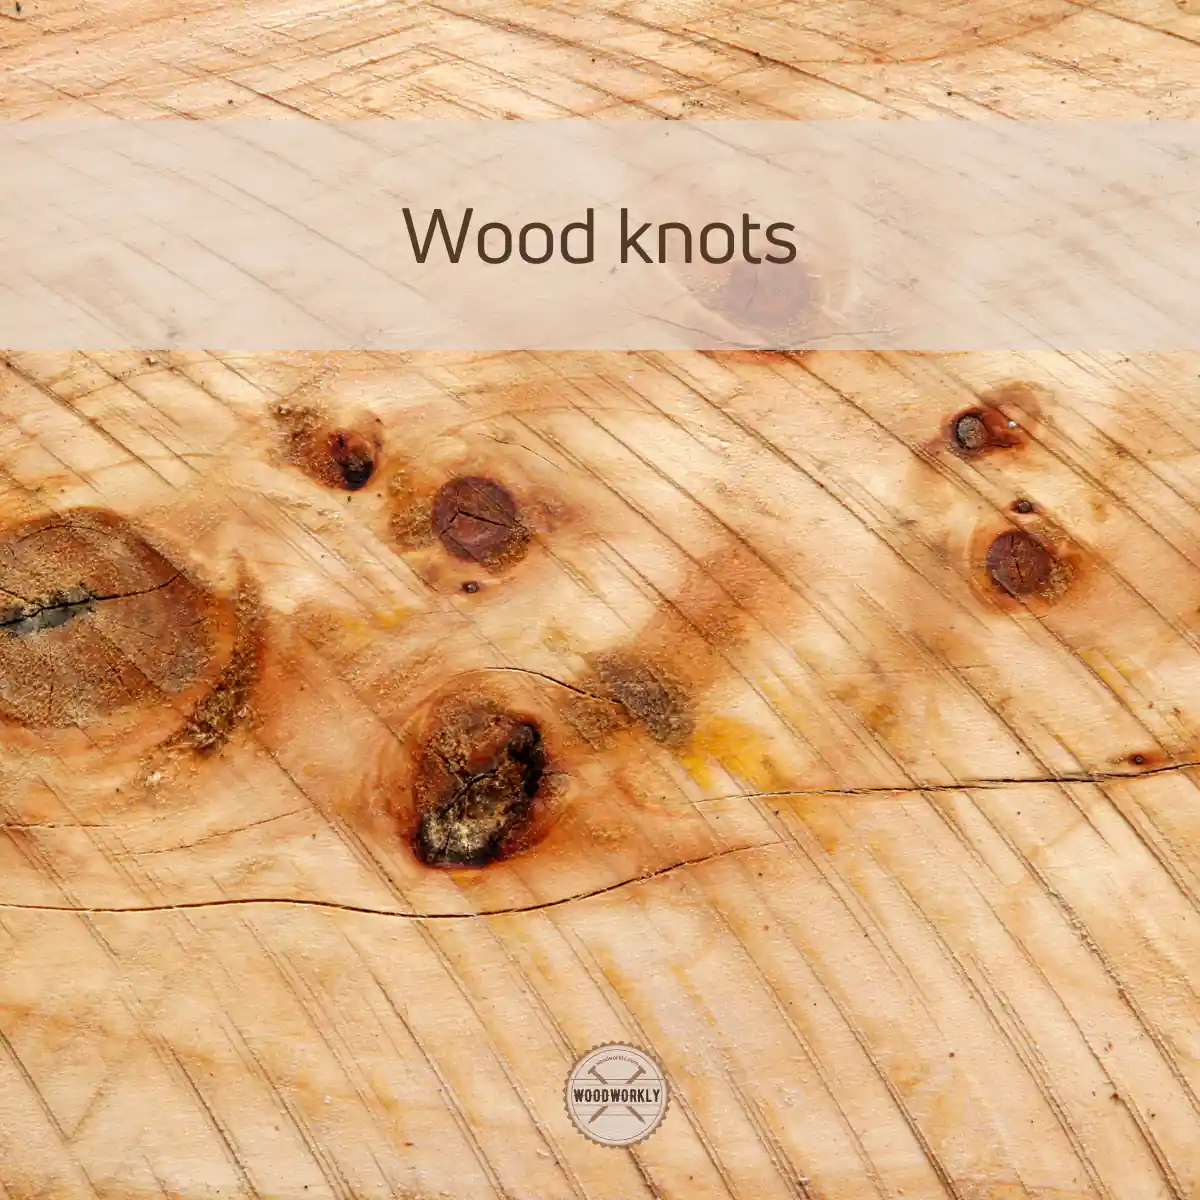 Wood knots